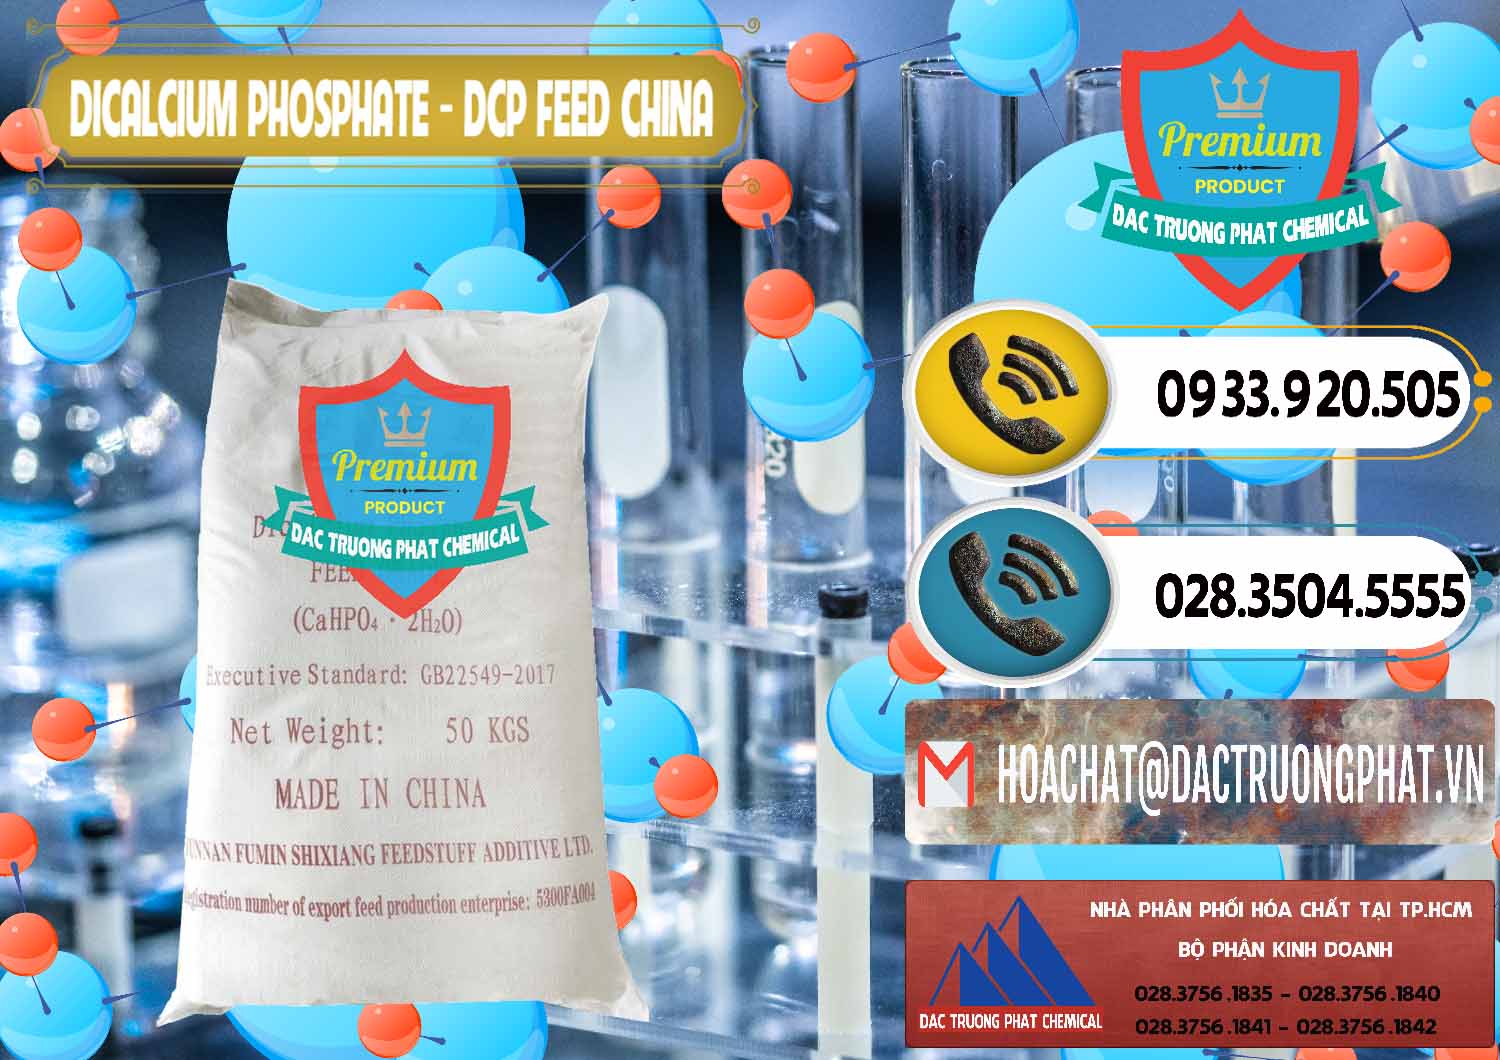 Cty nhập khẩu - bán Dicalcium Phosphate - DCP Feed Grade Trung Quốc China - 0296 - Nơi chuyên cung cấp ( nhập khẩu ) hóa chất tại TP.HCM - hoachatdetnhuom.vn